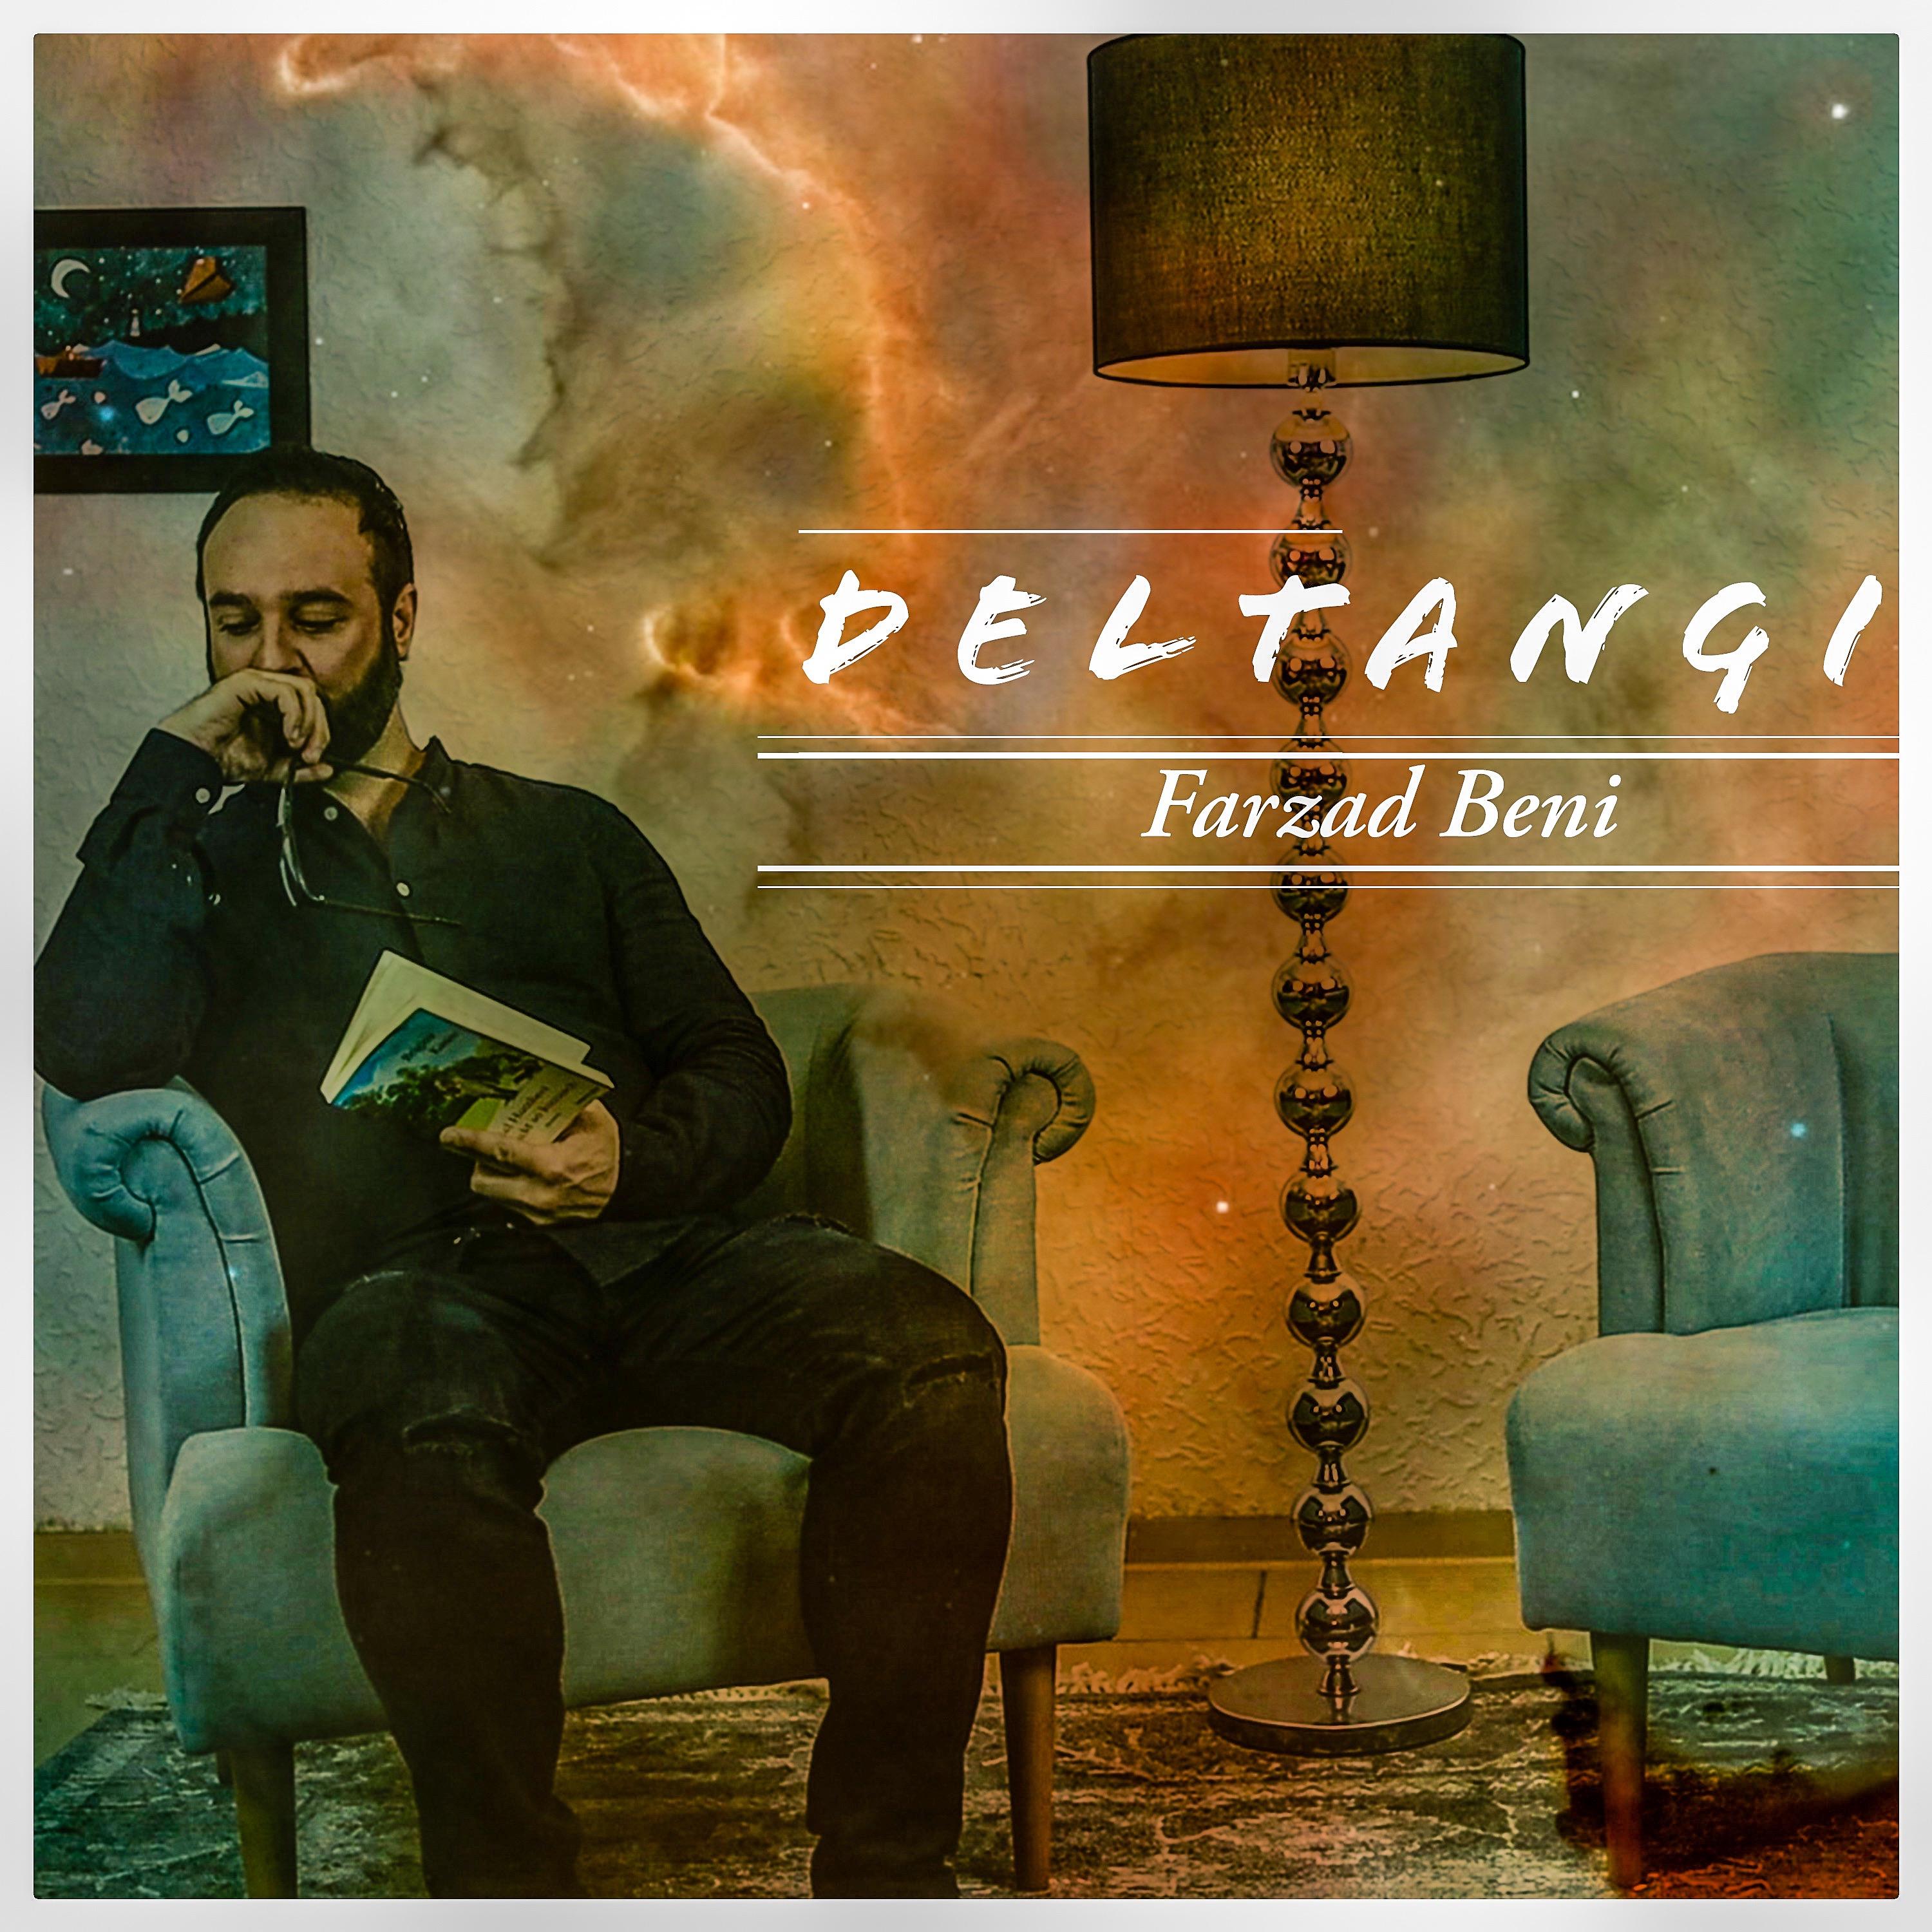 Постер альбома Deltangi